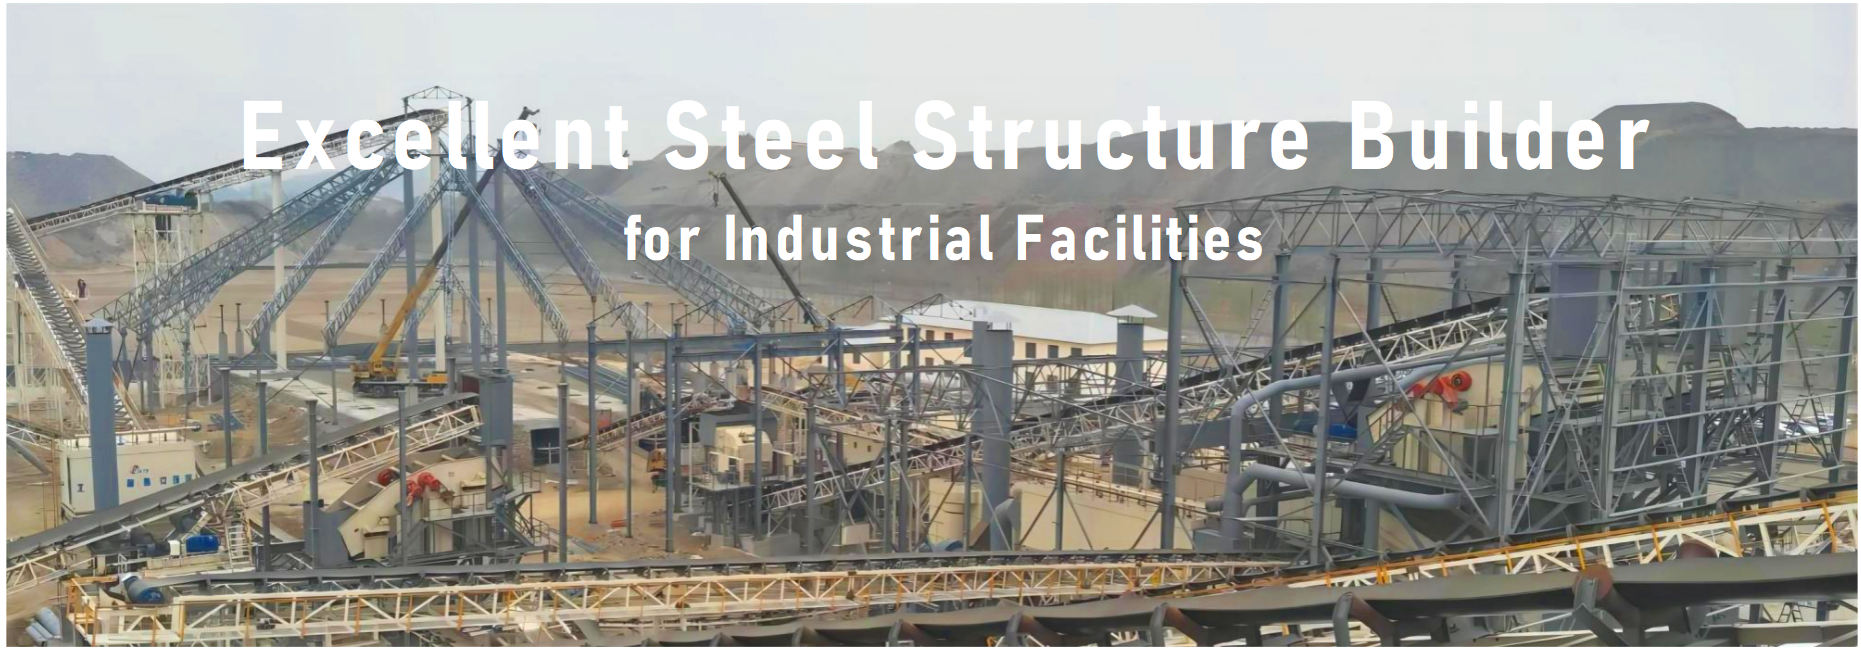 Potentia Mfg Industrial Steel Structure